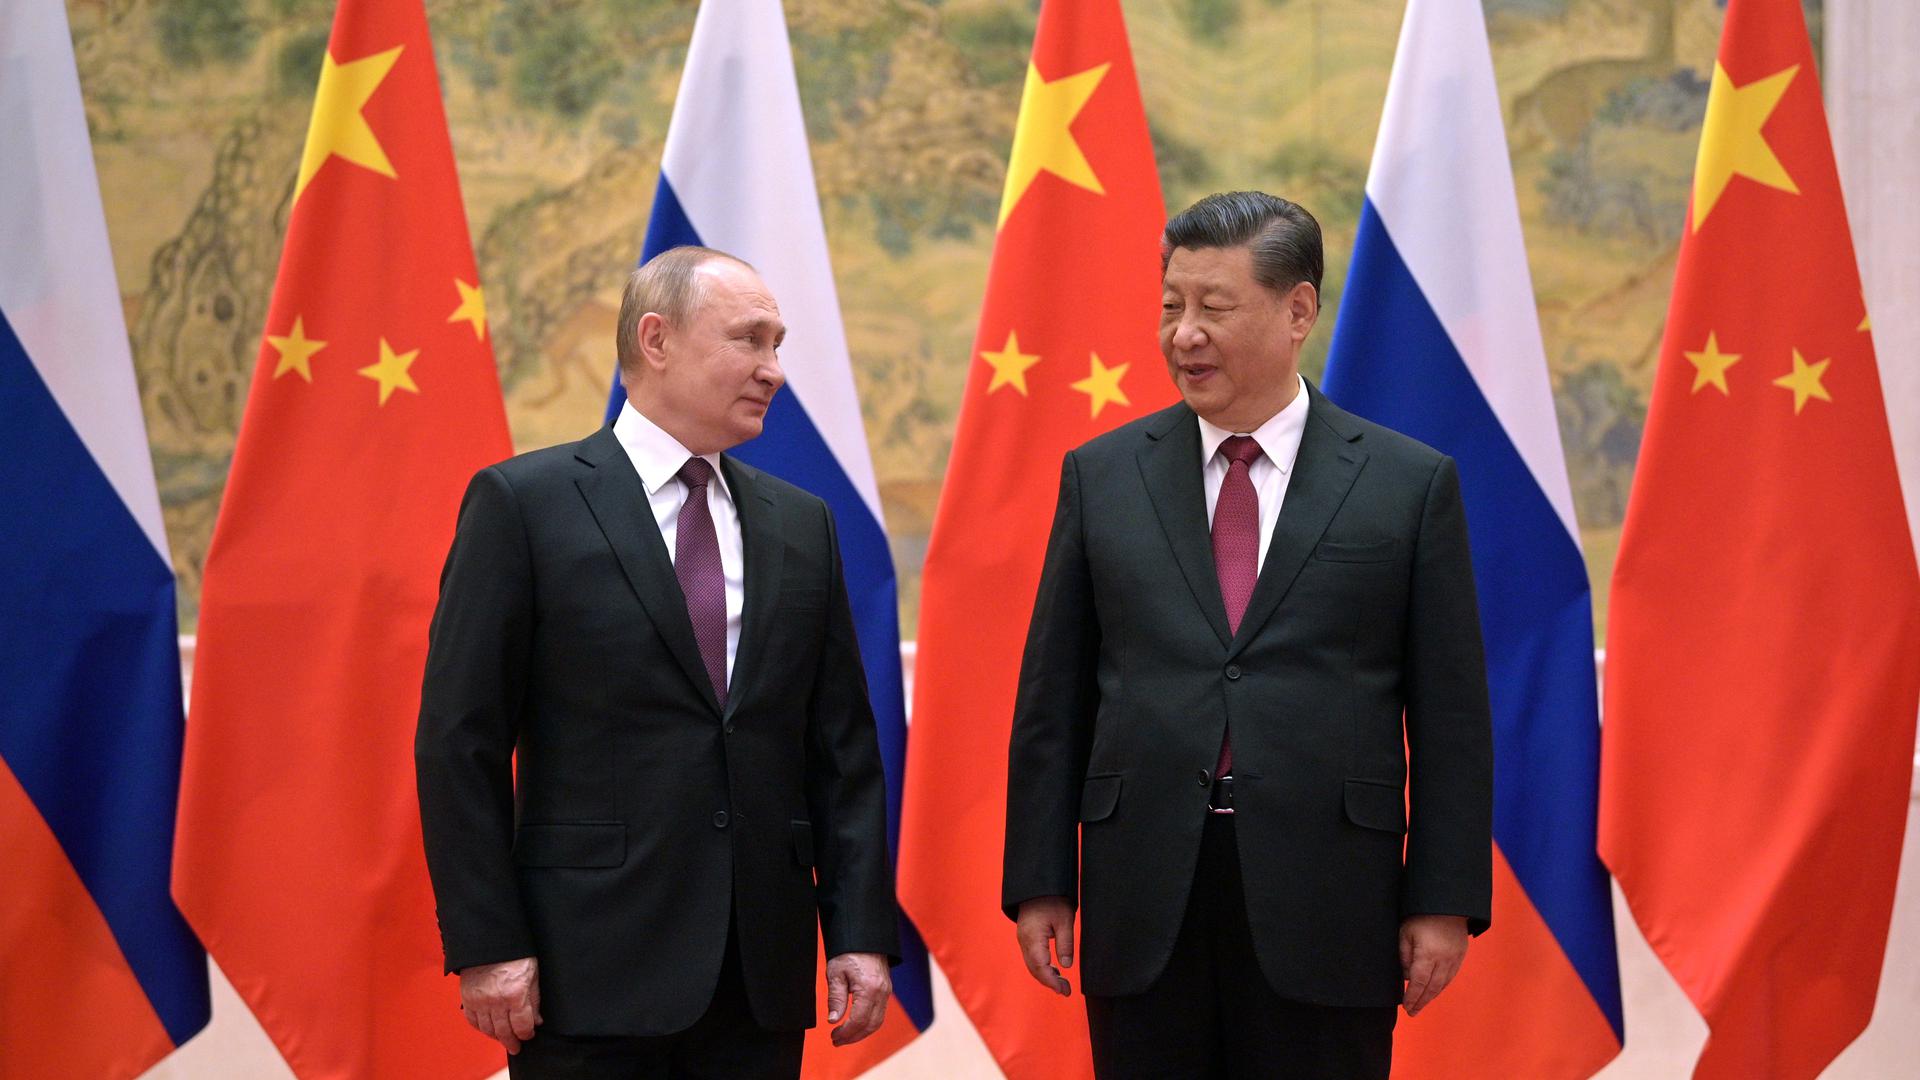 Der chinesische Präsident Xi Jinping (r) und der russische Präsident Wladimir Putin vor ihren Gesprächen. Der russische Präsident Wladimir Putin ist am 04.02.2022 zu einem Besuch in Chinas Hauptstadt Peking eingetroffen. Zunächst ist ein Arbeitsessen mit Staats- und Parteichef Xi Jinping geplant, wie die russische Nachrichtenagentur Tass berichtete. Dabei dürfte es auch um den Konflikt zwischen Russland und der Ukraine gehen. +++ dpa-Bildfunk +++